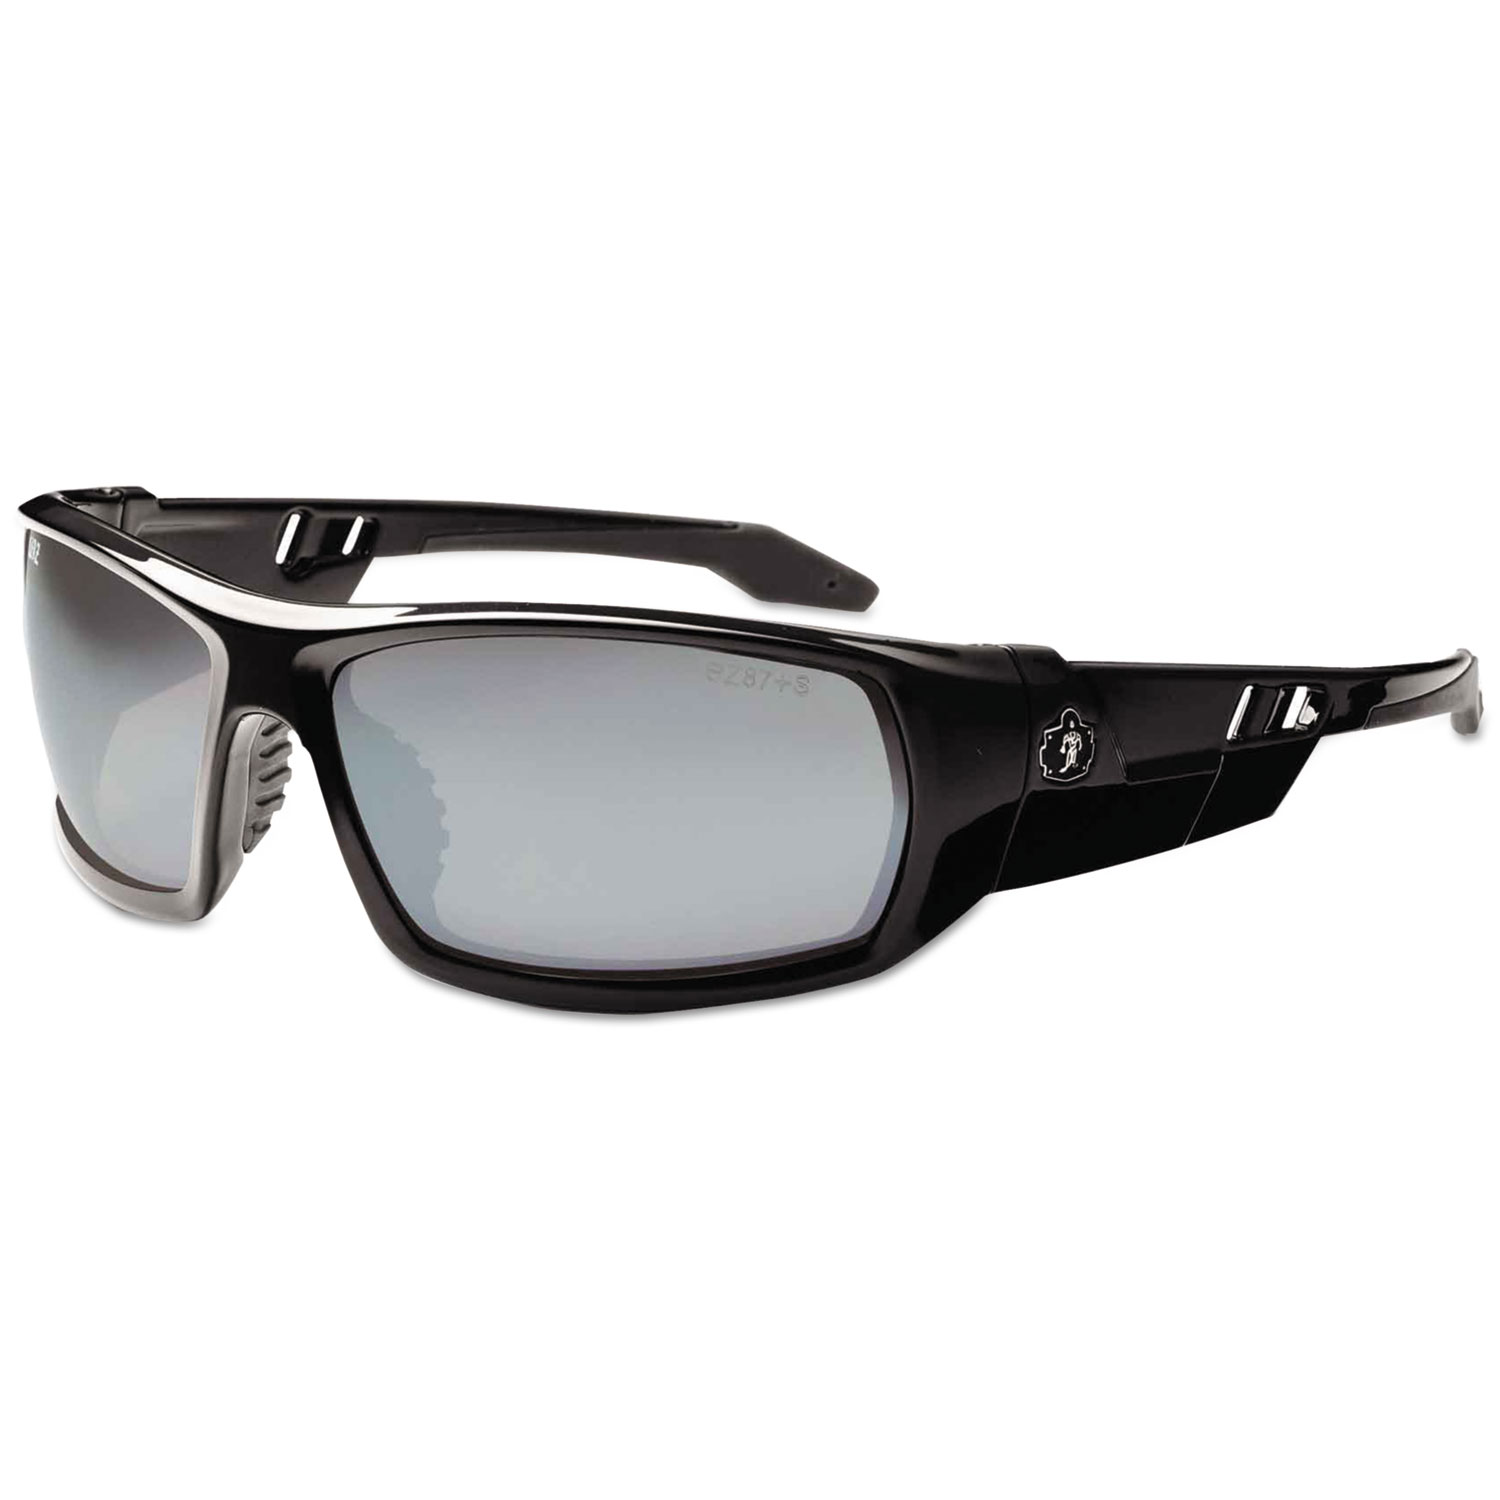  ergodyne 50042 Skullerz Odin Safety Glasses, Black Frame/Silver Lens, Nylon/Polycarb (EGO50042) 